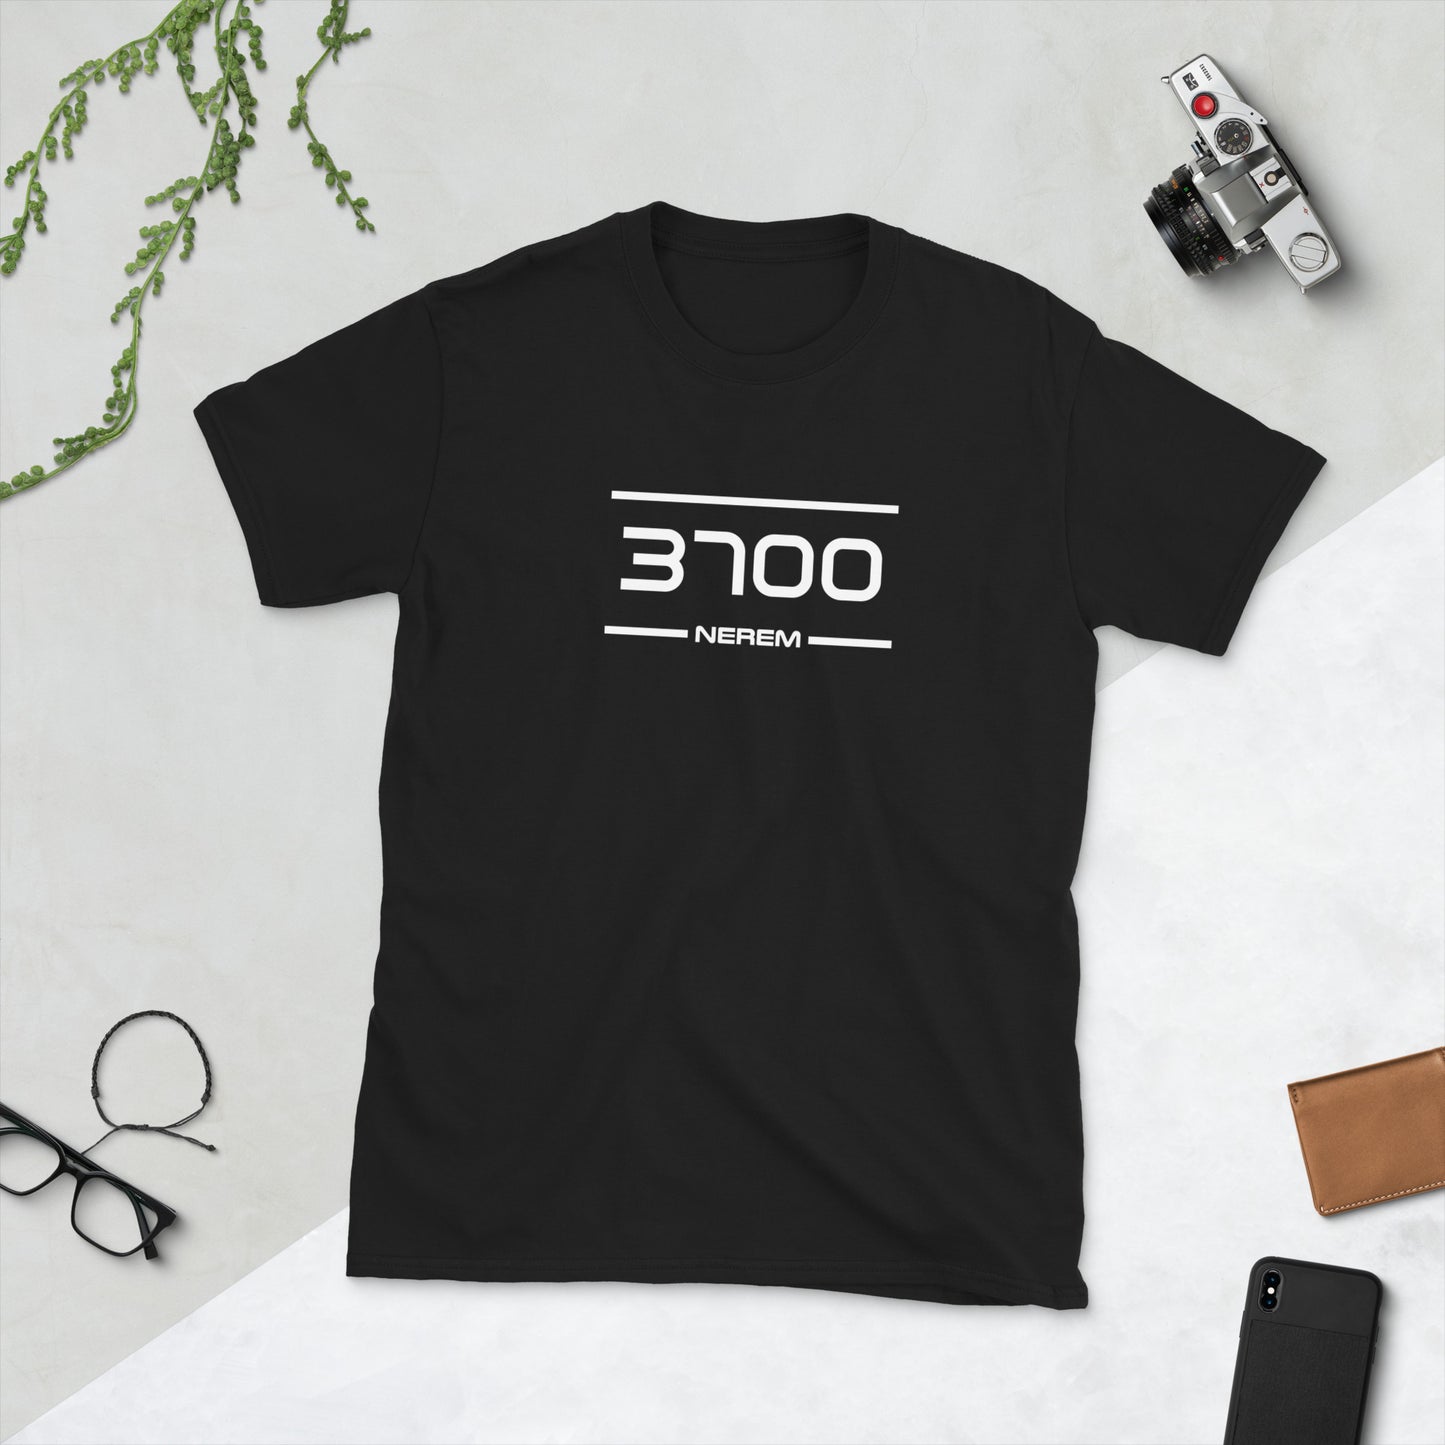 Tshirt - 3700 - Nerem